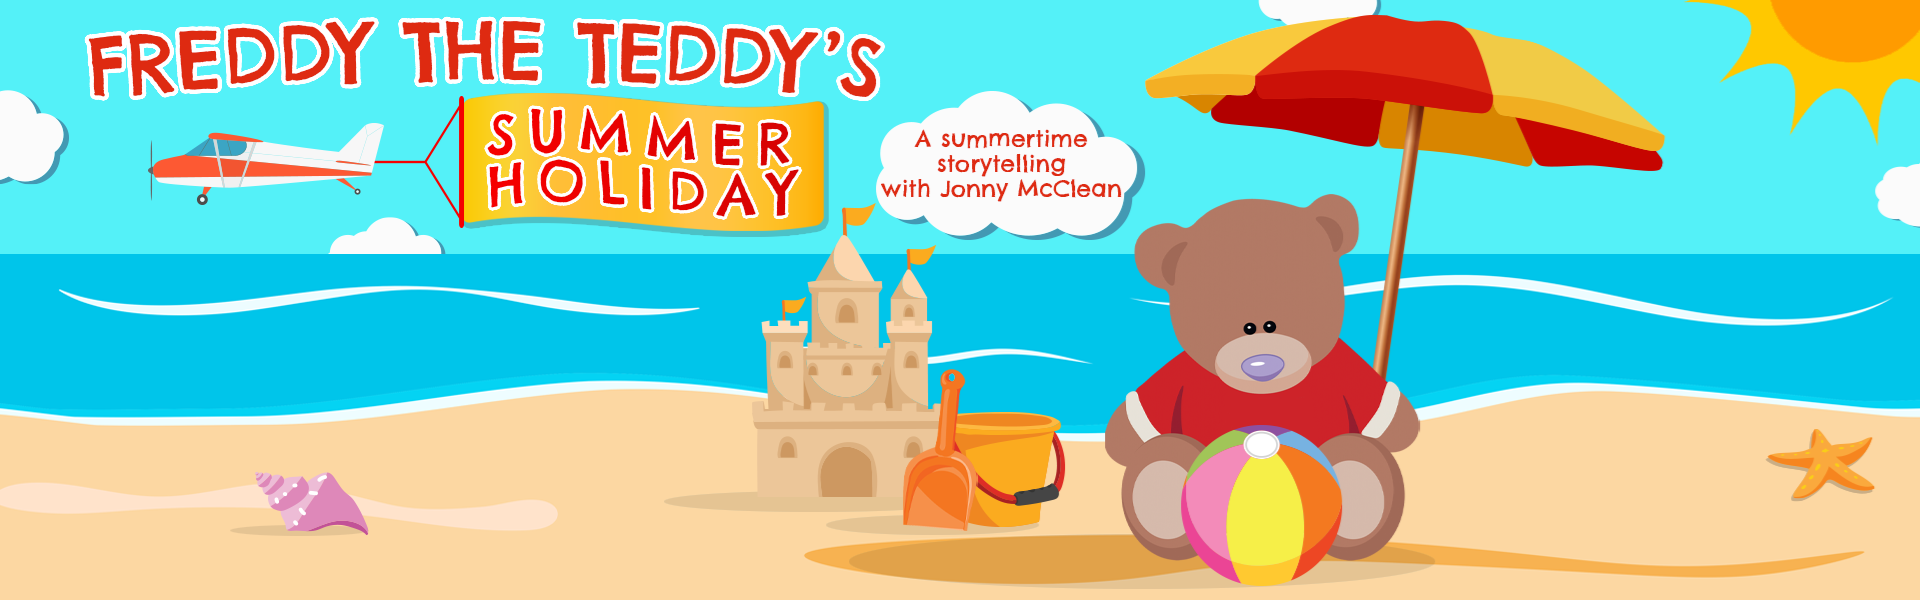 Freddy The Teddy's Summer Holiday